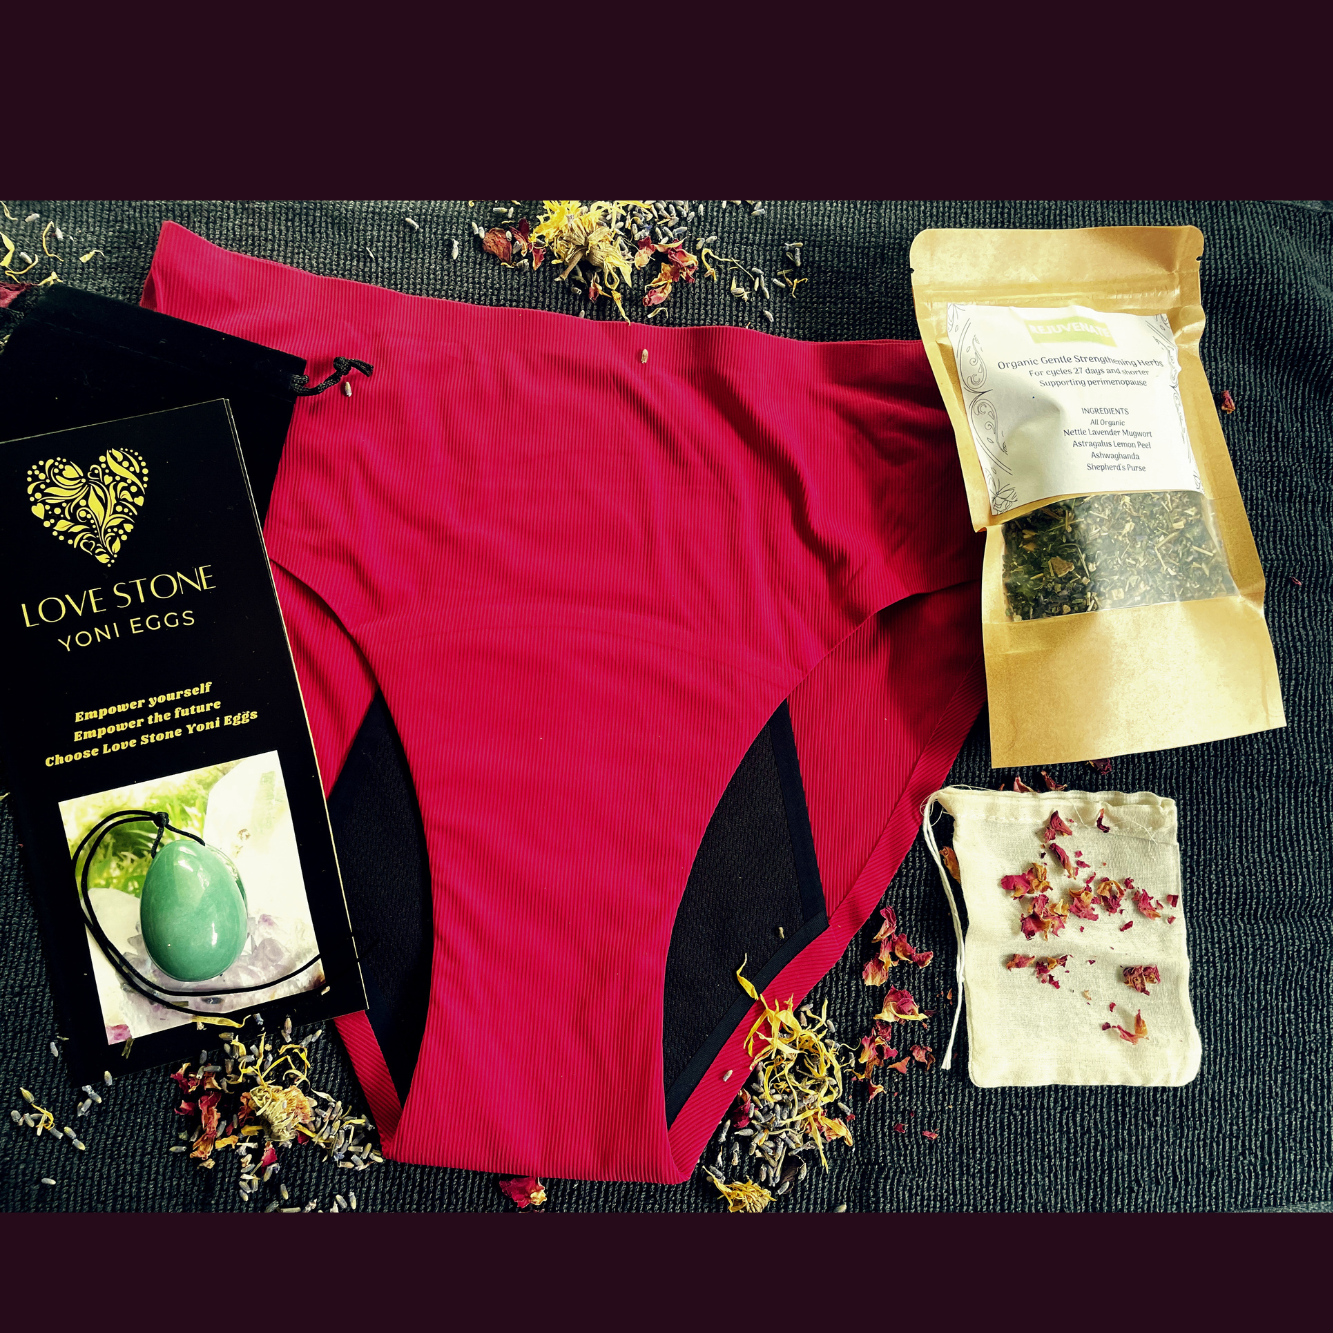 Self Love Set - Yoni Stone, Steam Herbs & Period Undies | Period Underwear